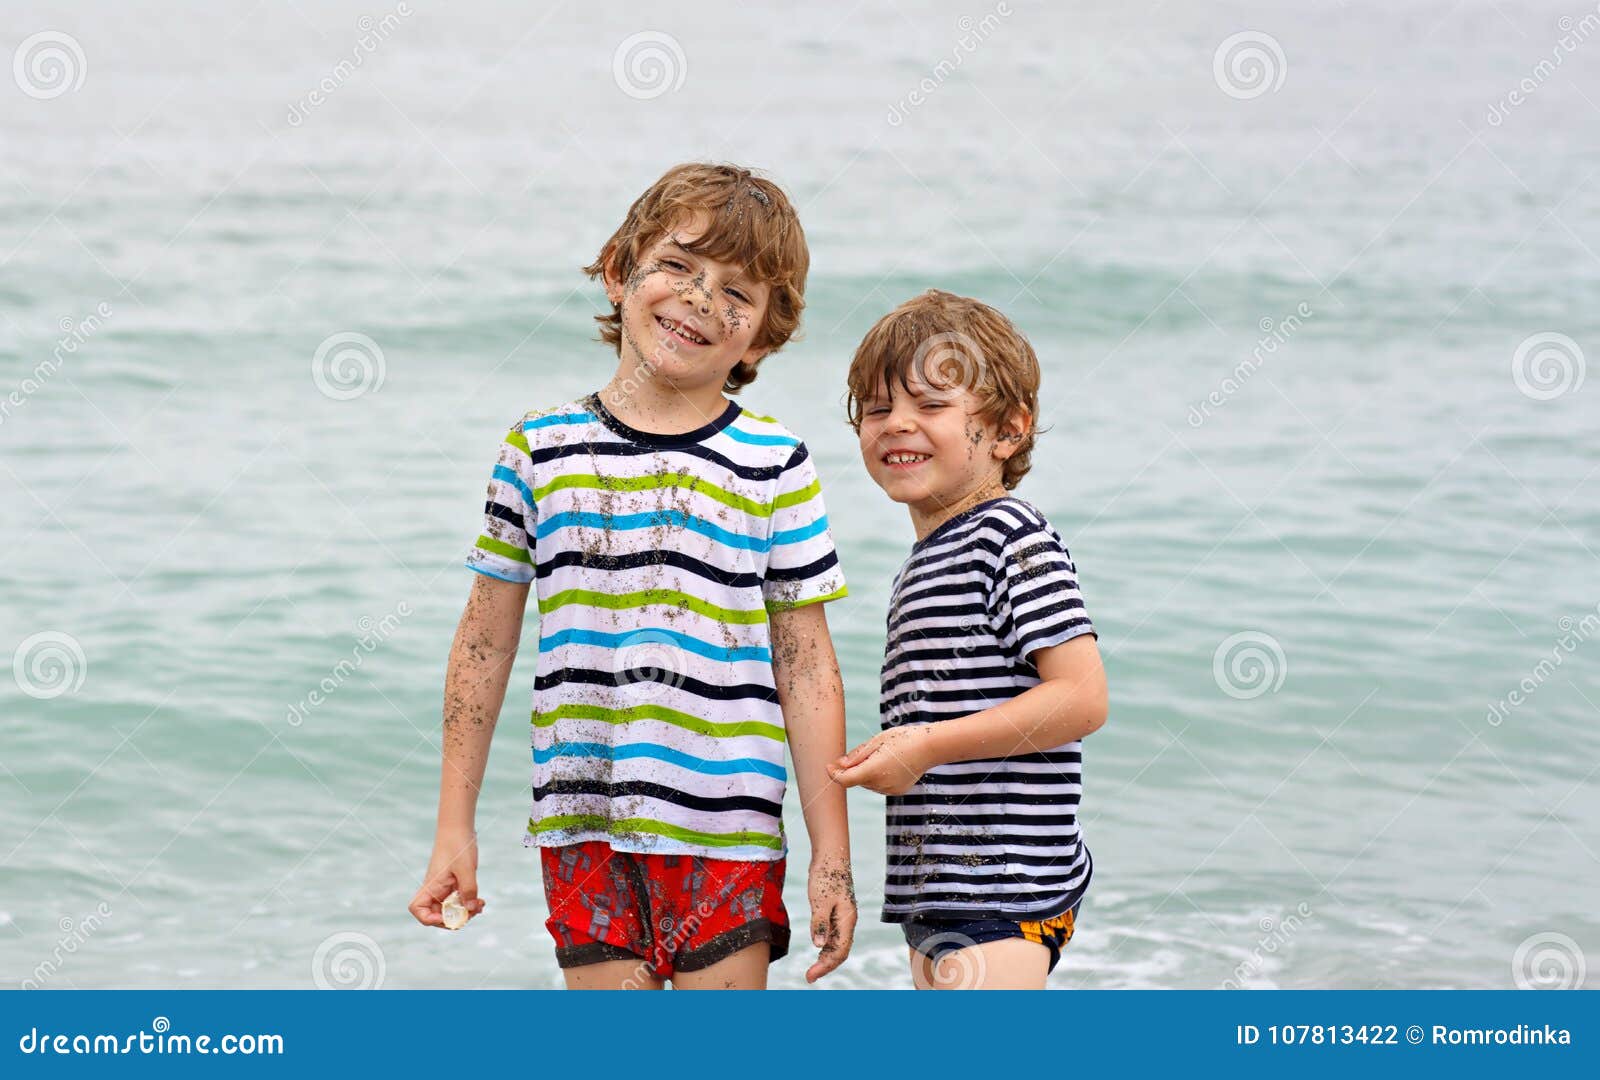 порно маленькие мальчики пляж фото 104